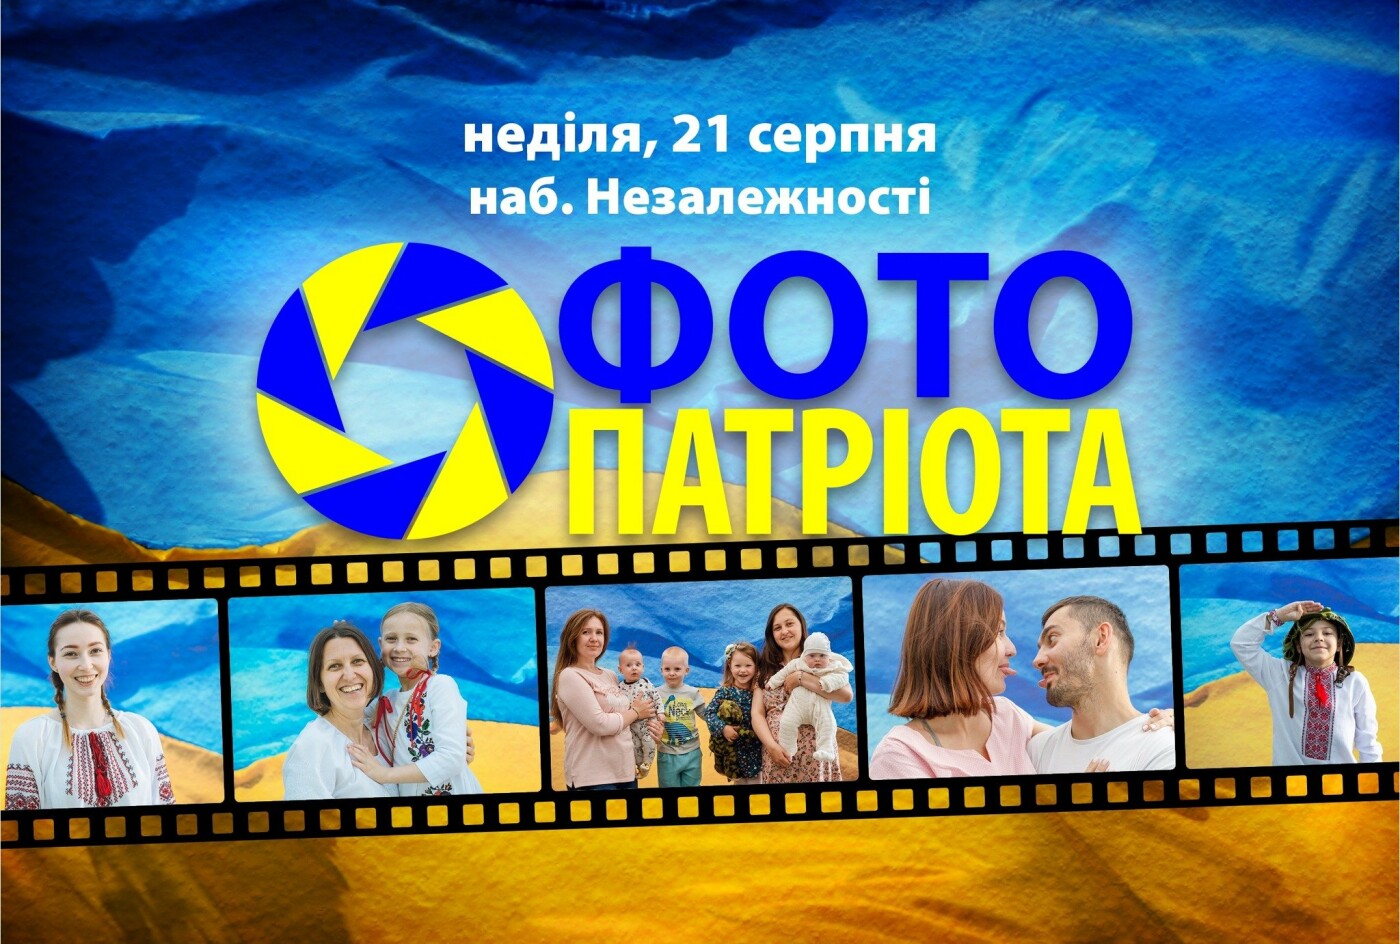 Традиційна акція "Фото патріота" відбудеться в Ужгороді 21 серпня